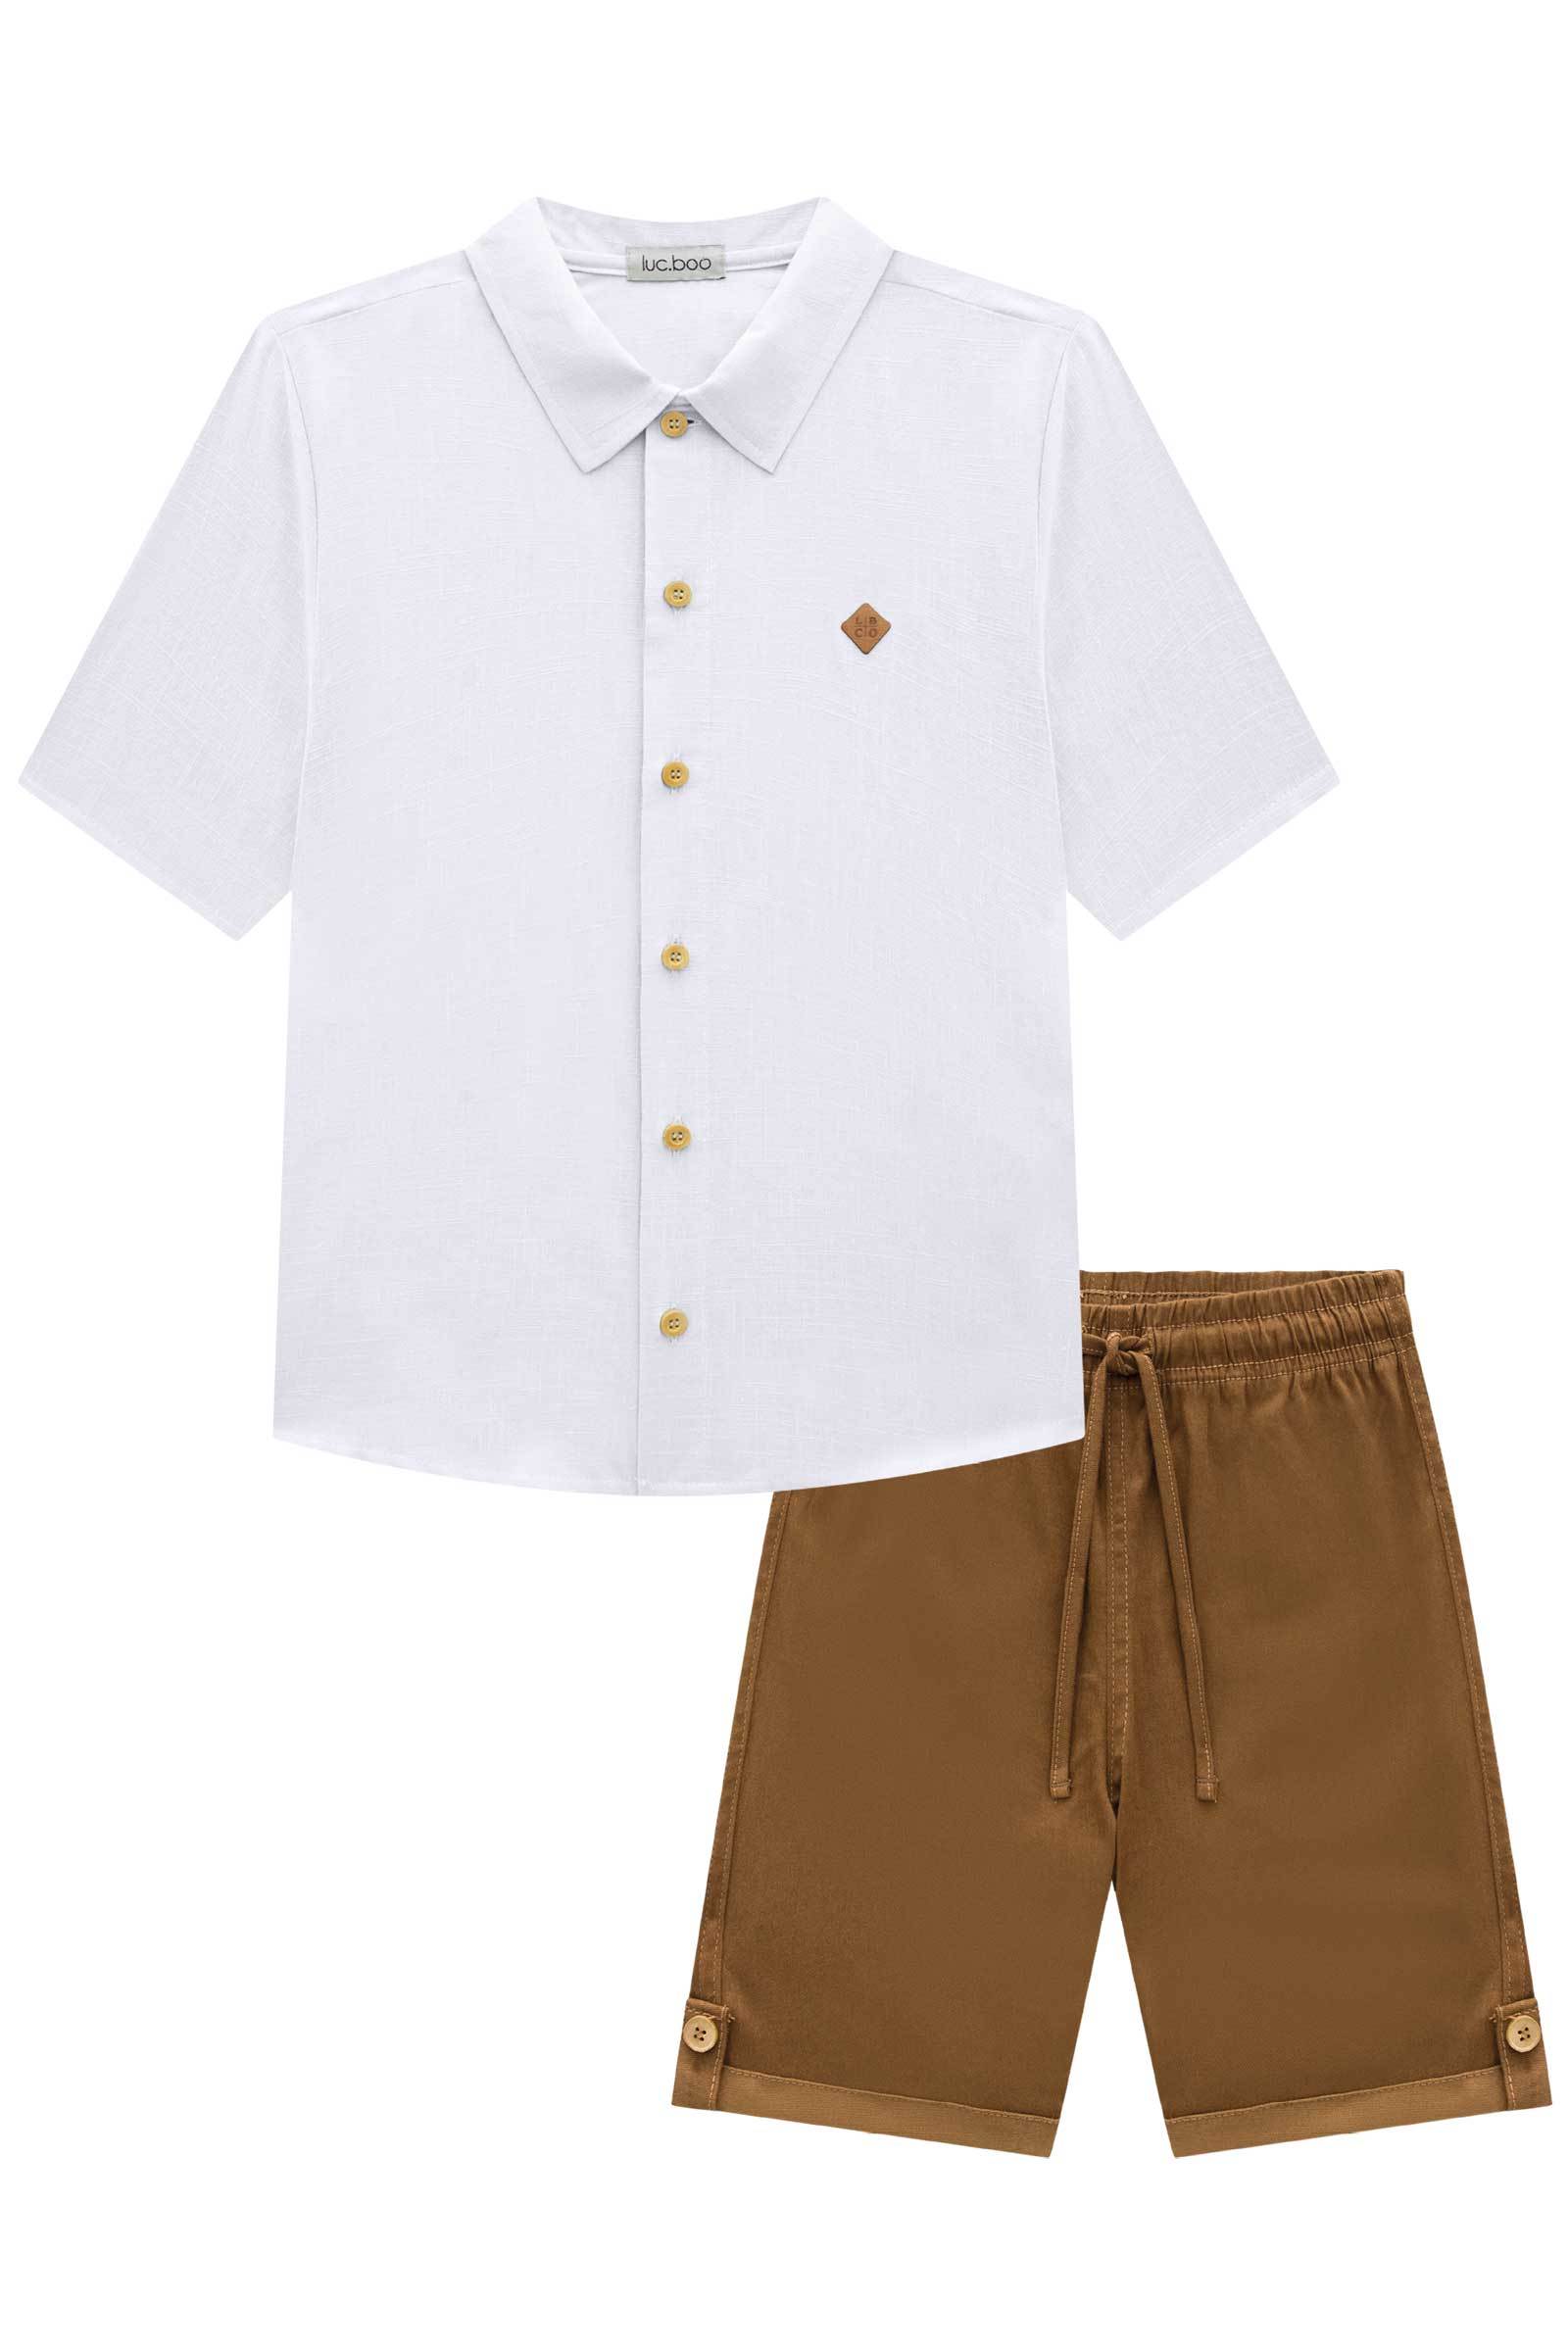 Conjunto de Camisa em Tecido Cotton Lavorto Flamê e Bermuda em Sarja Stretch com Elastano 73983 LucBoo